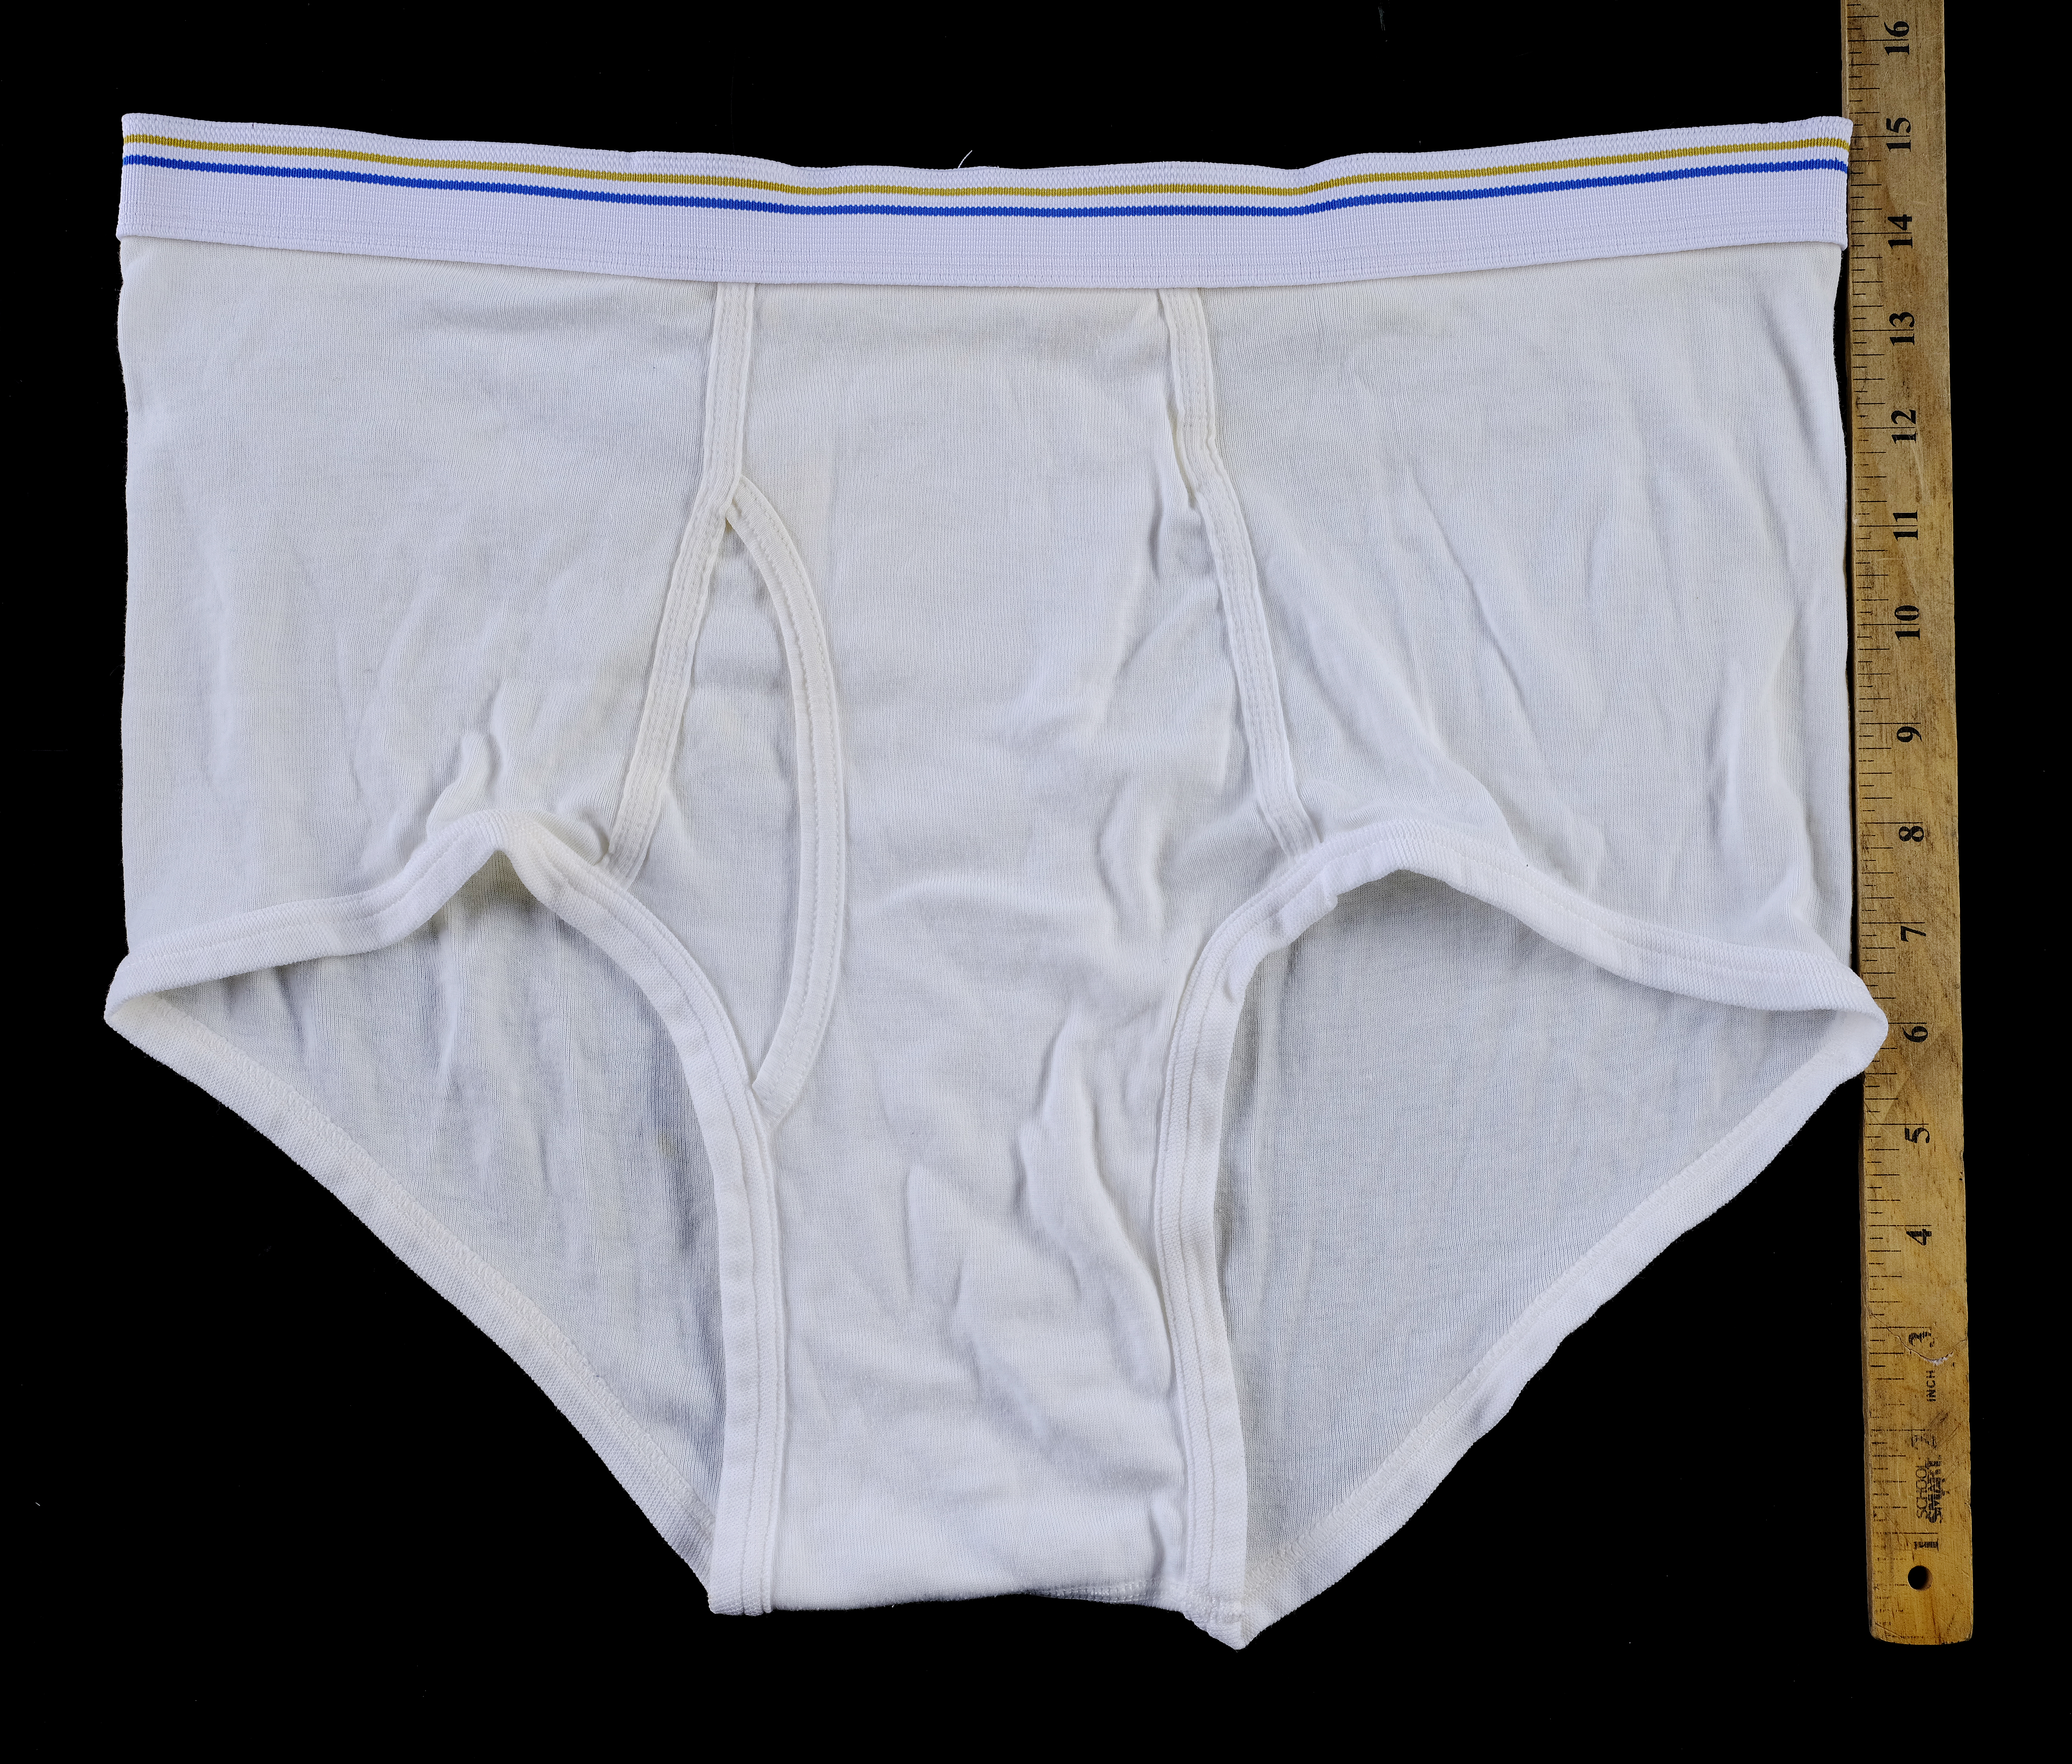 breaking bad bryan cranston underwear